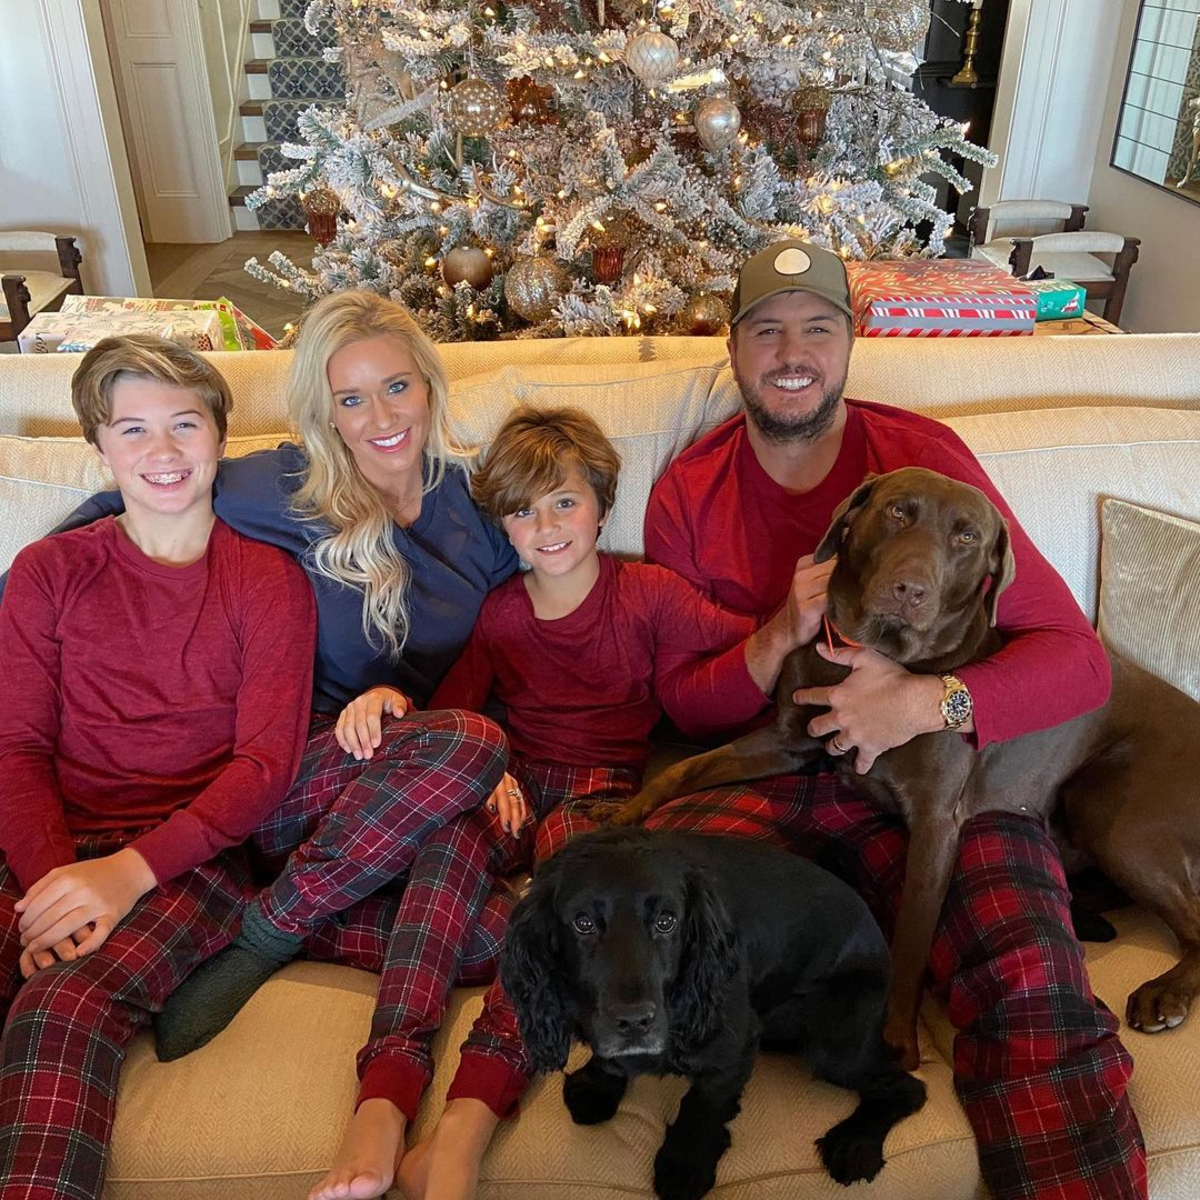 Simone Biles and Jonathan Owens Celebrate Christmas in Pajamas